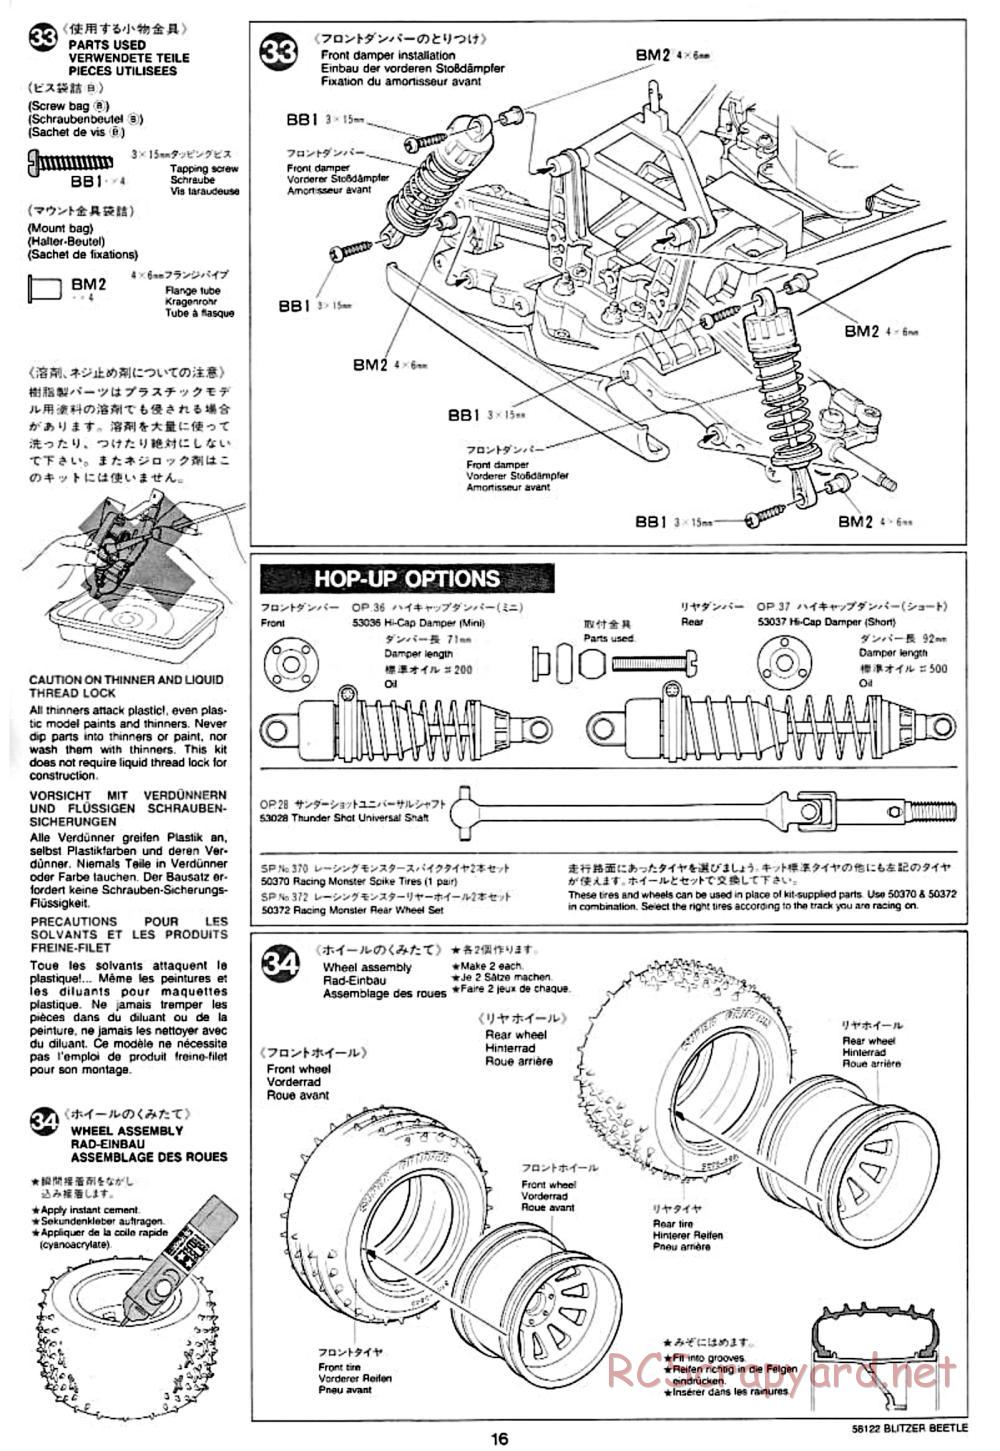 Tamiya - Blitzer Beetle Chassis - Manual - Page 16